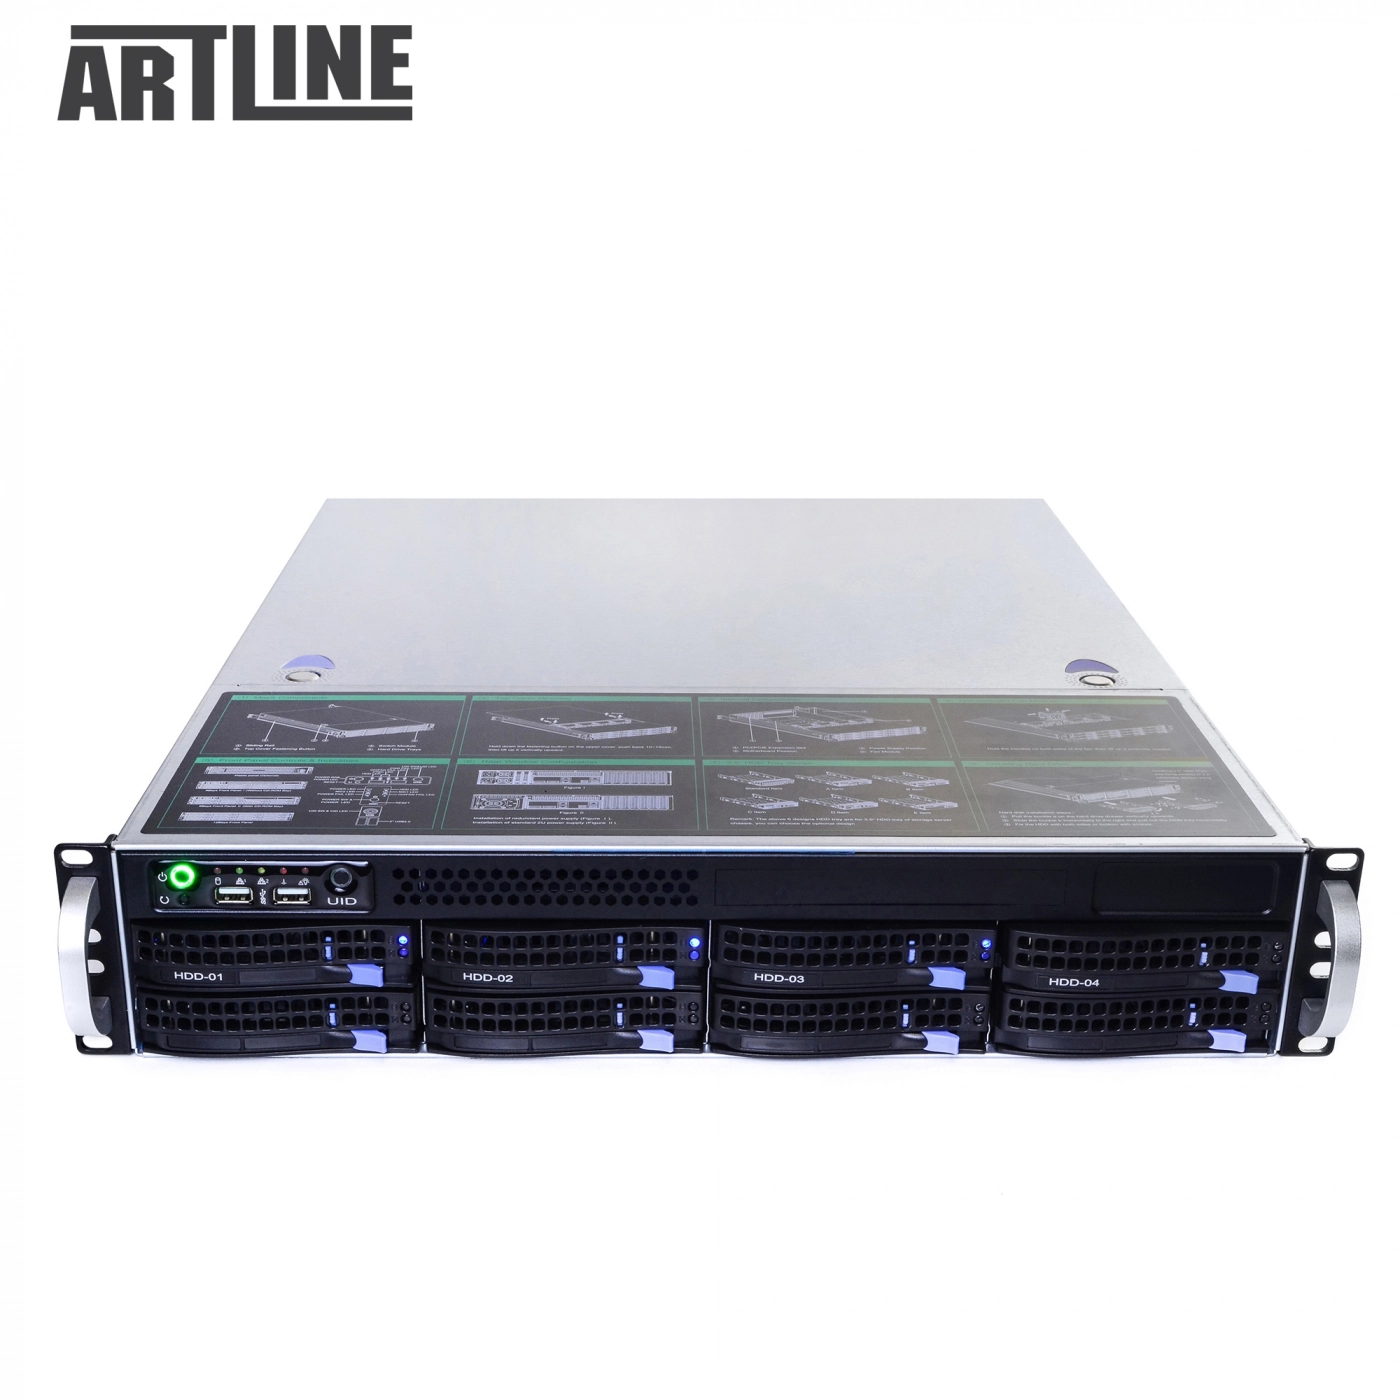 Купить Сервер ARTLINE Business R38v02 - фото 10